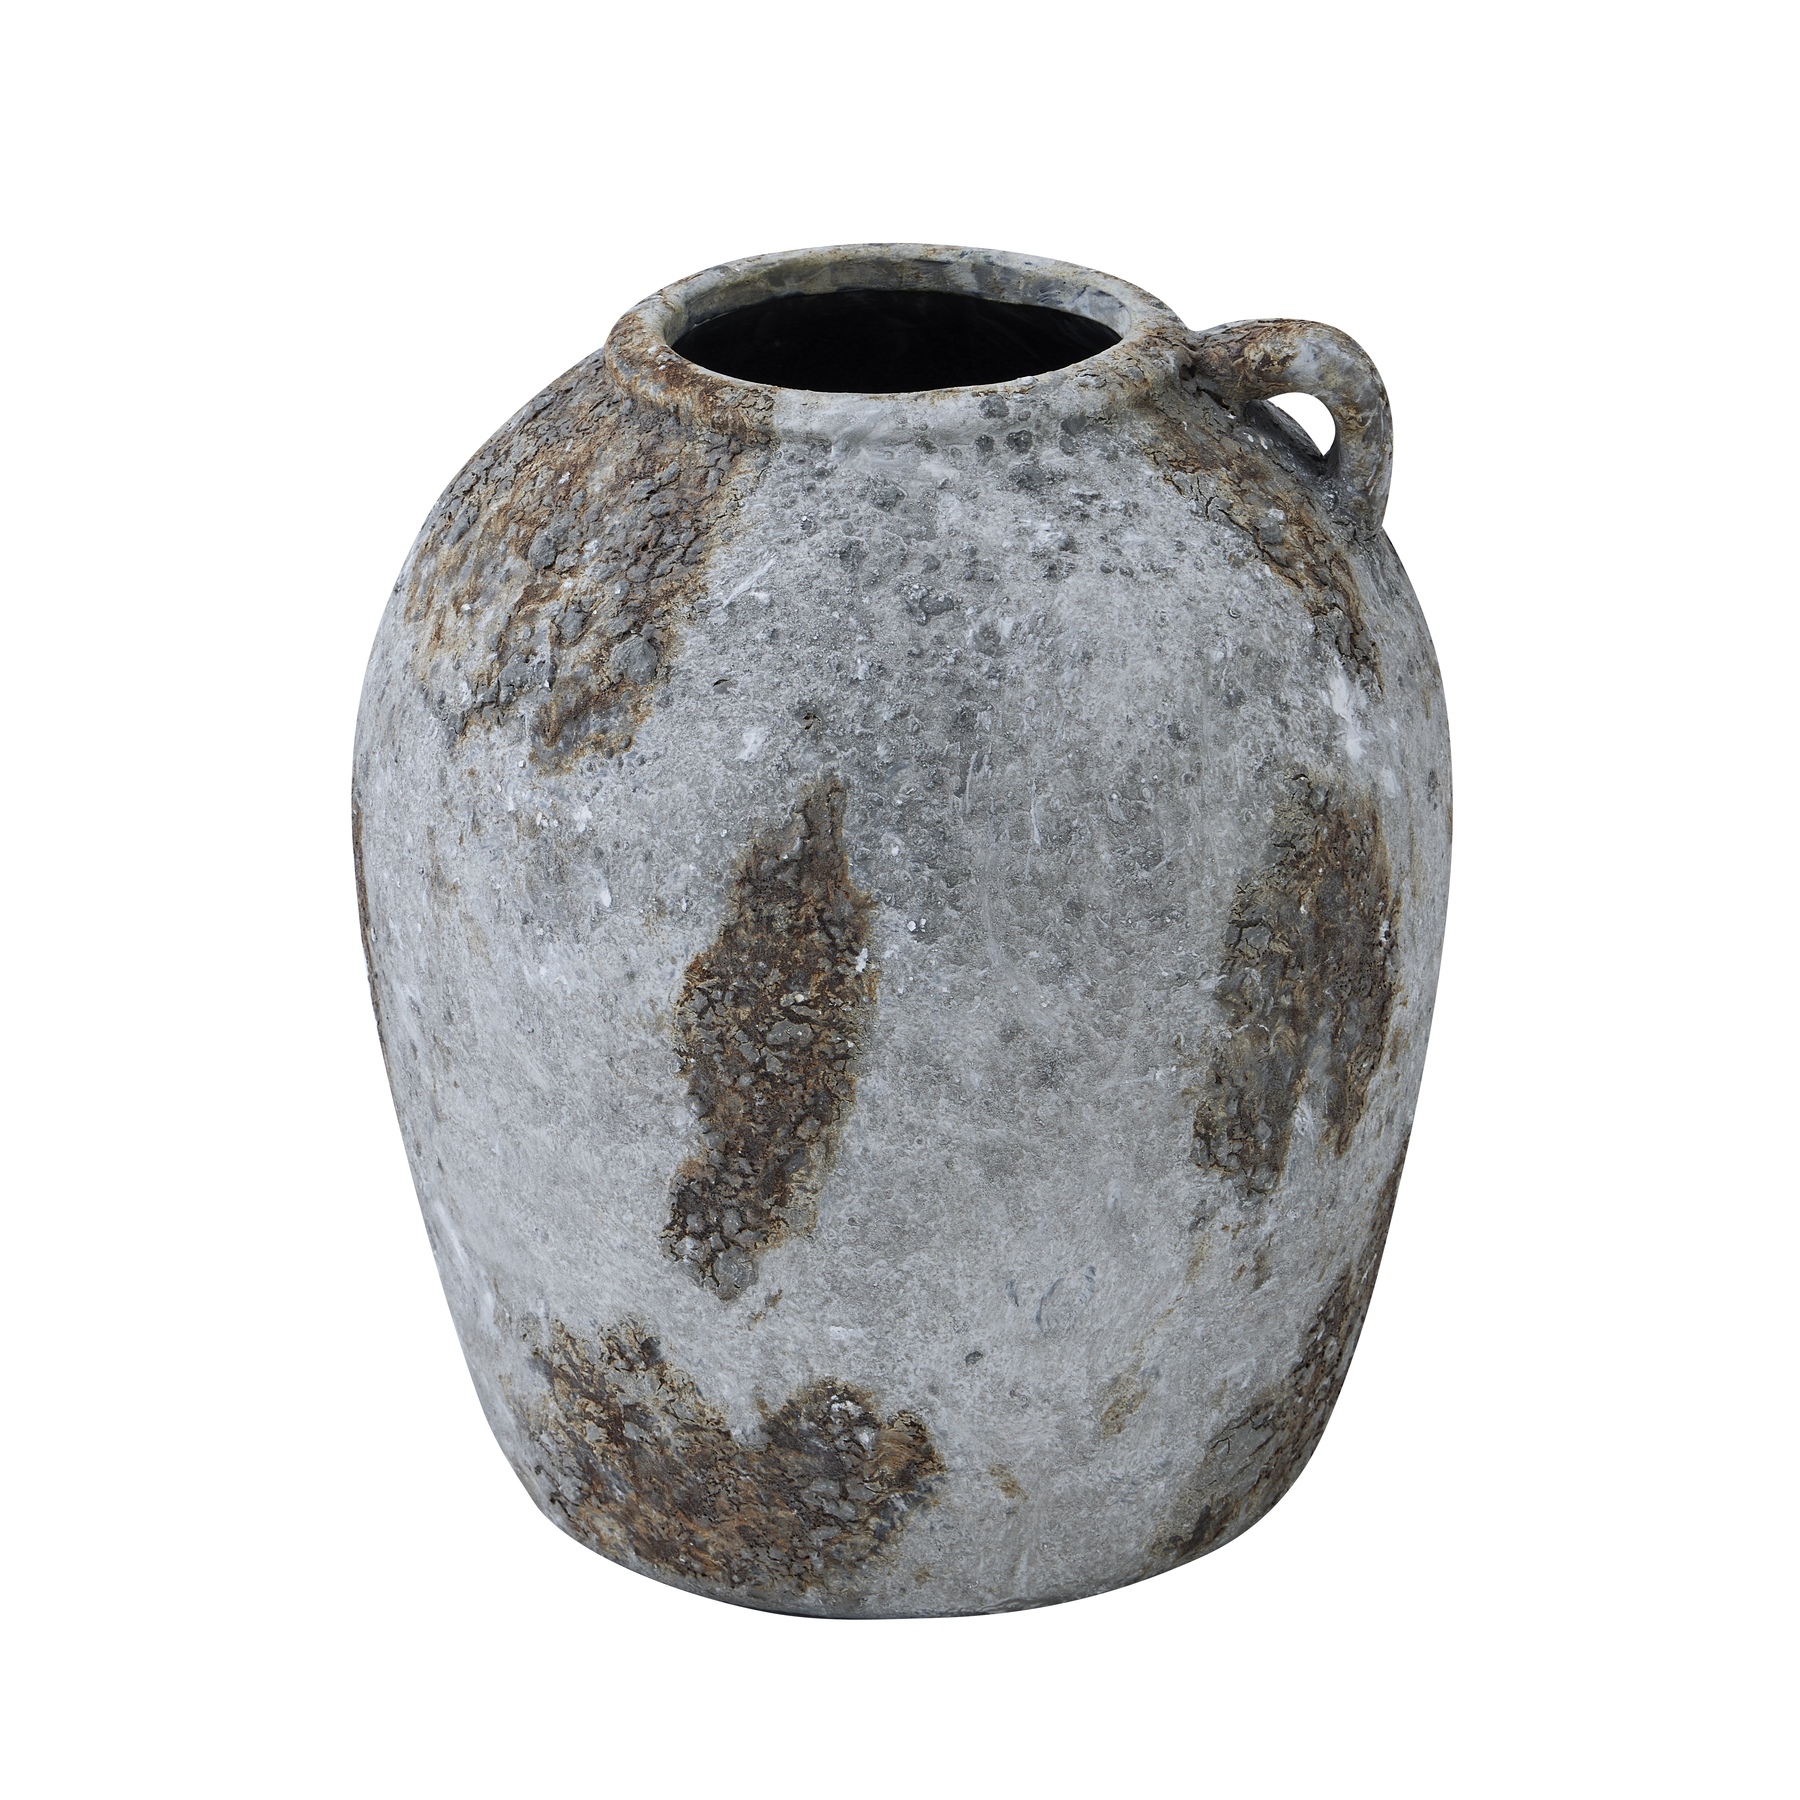 Aged Stone Olpe Vase - Image 1